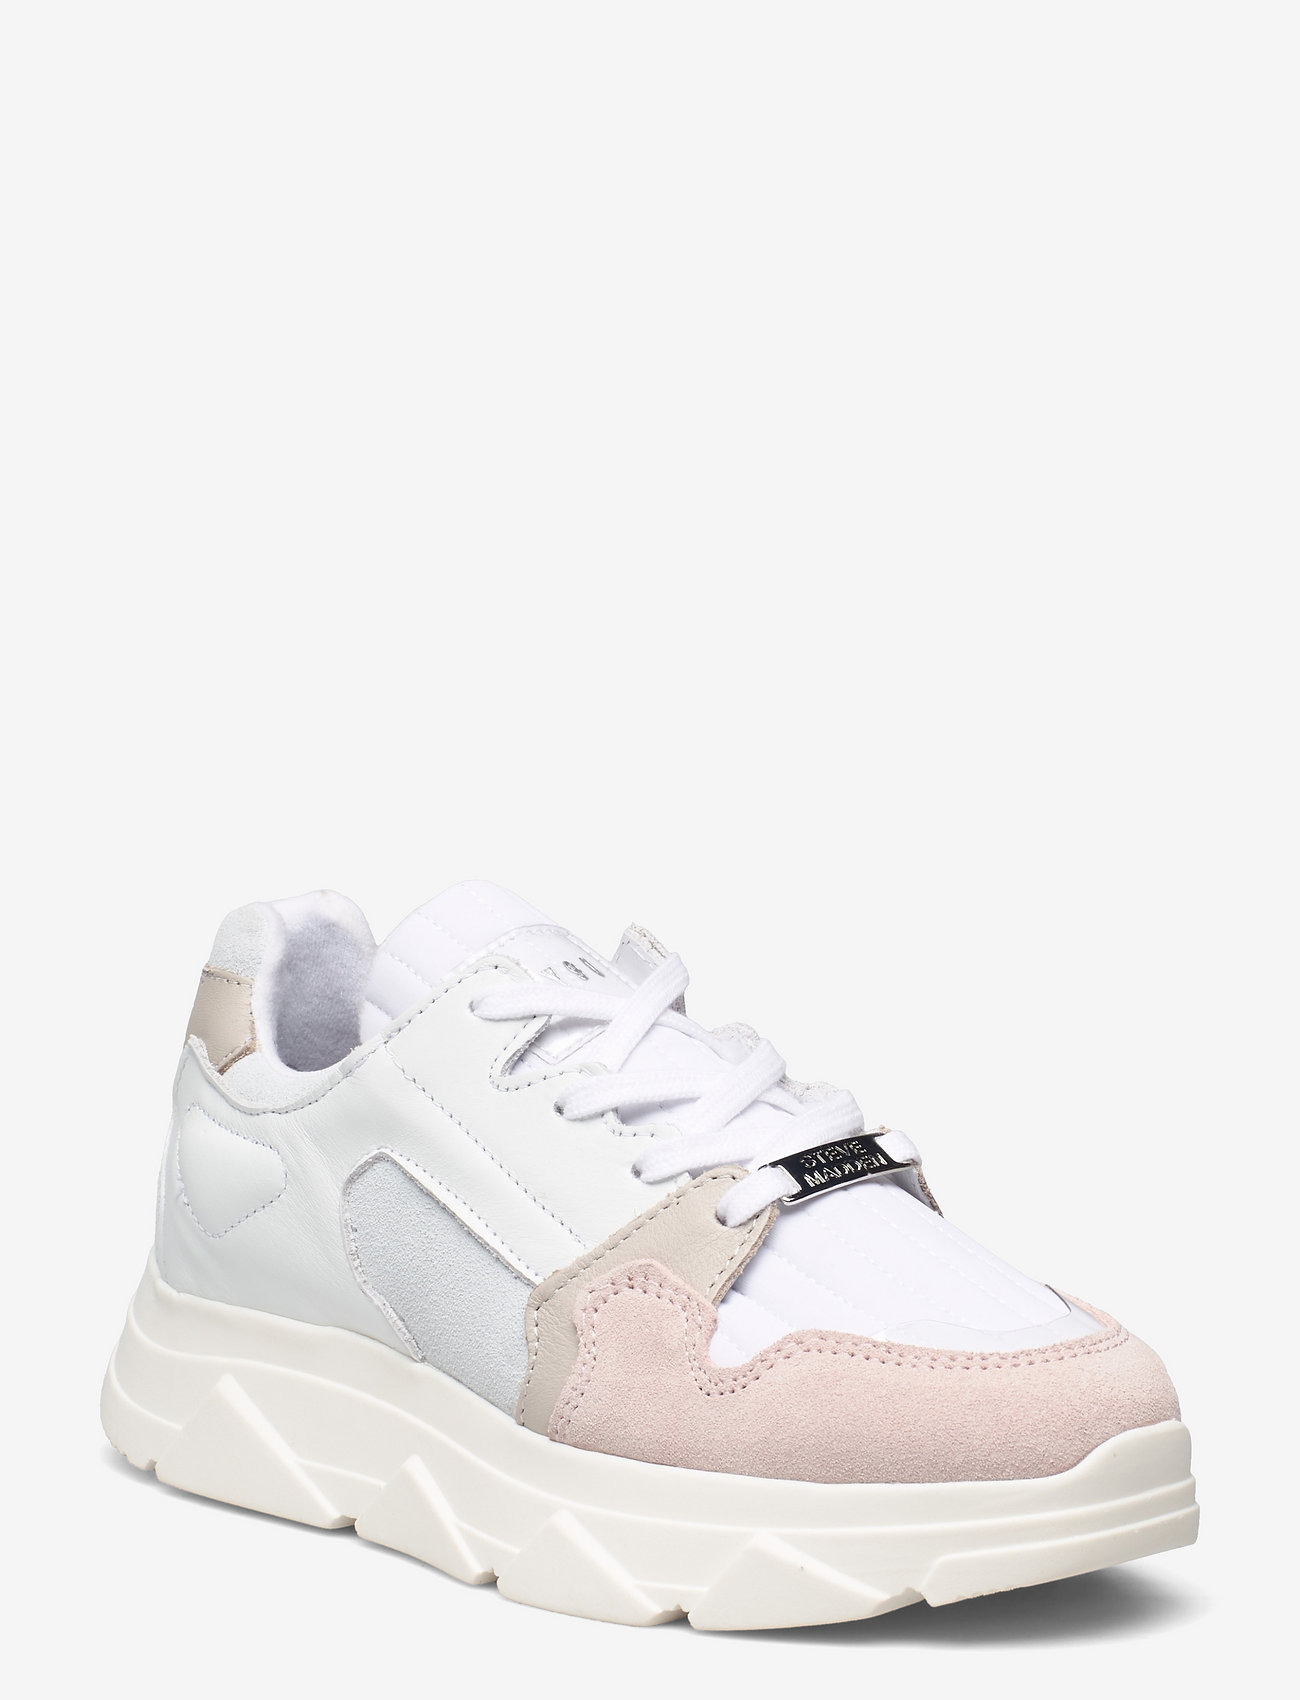 Steve Madden - Poppy Sneaker - white/pink - 0